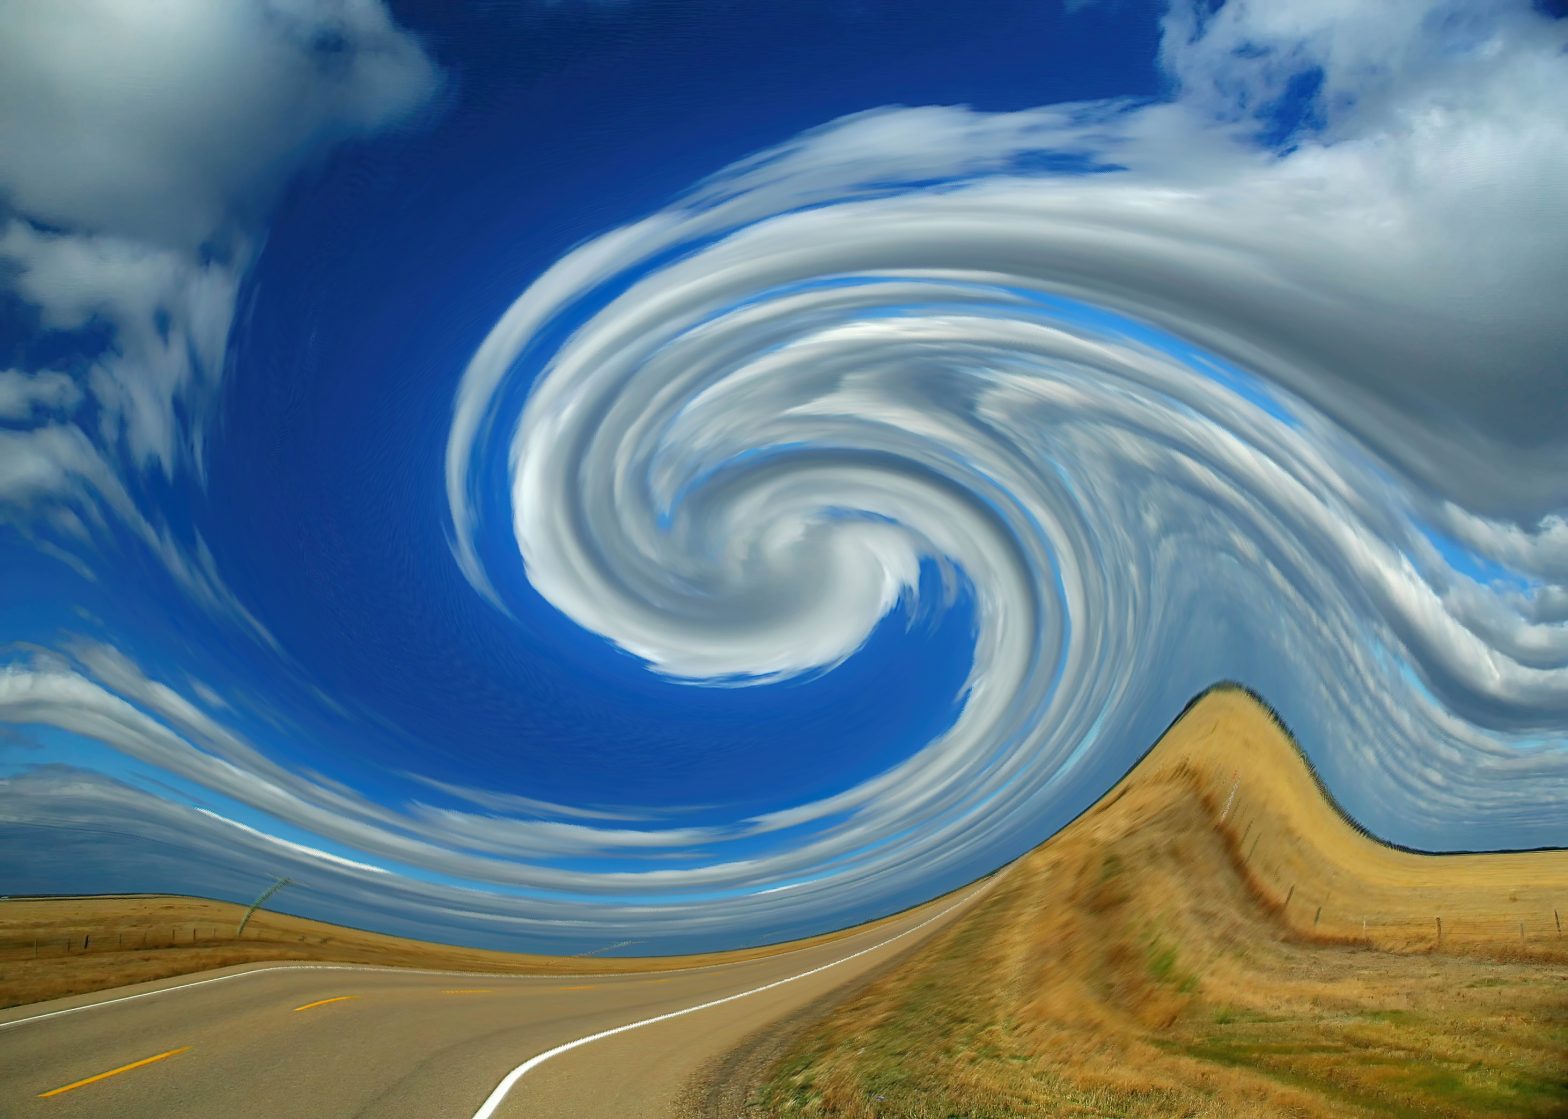 Tsunami prairie swirl abstract